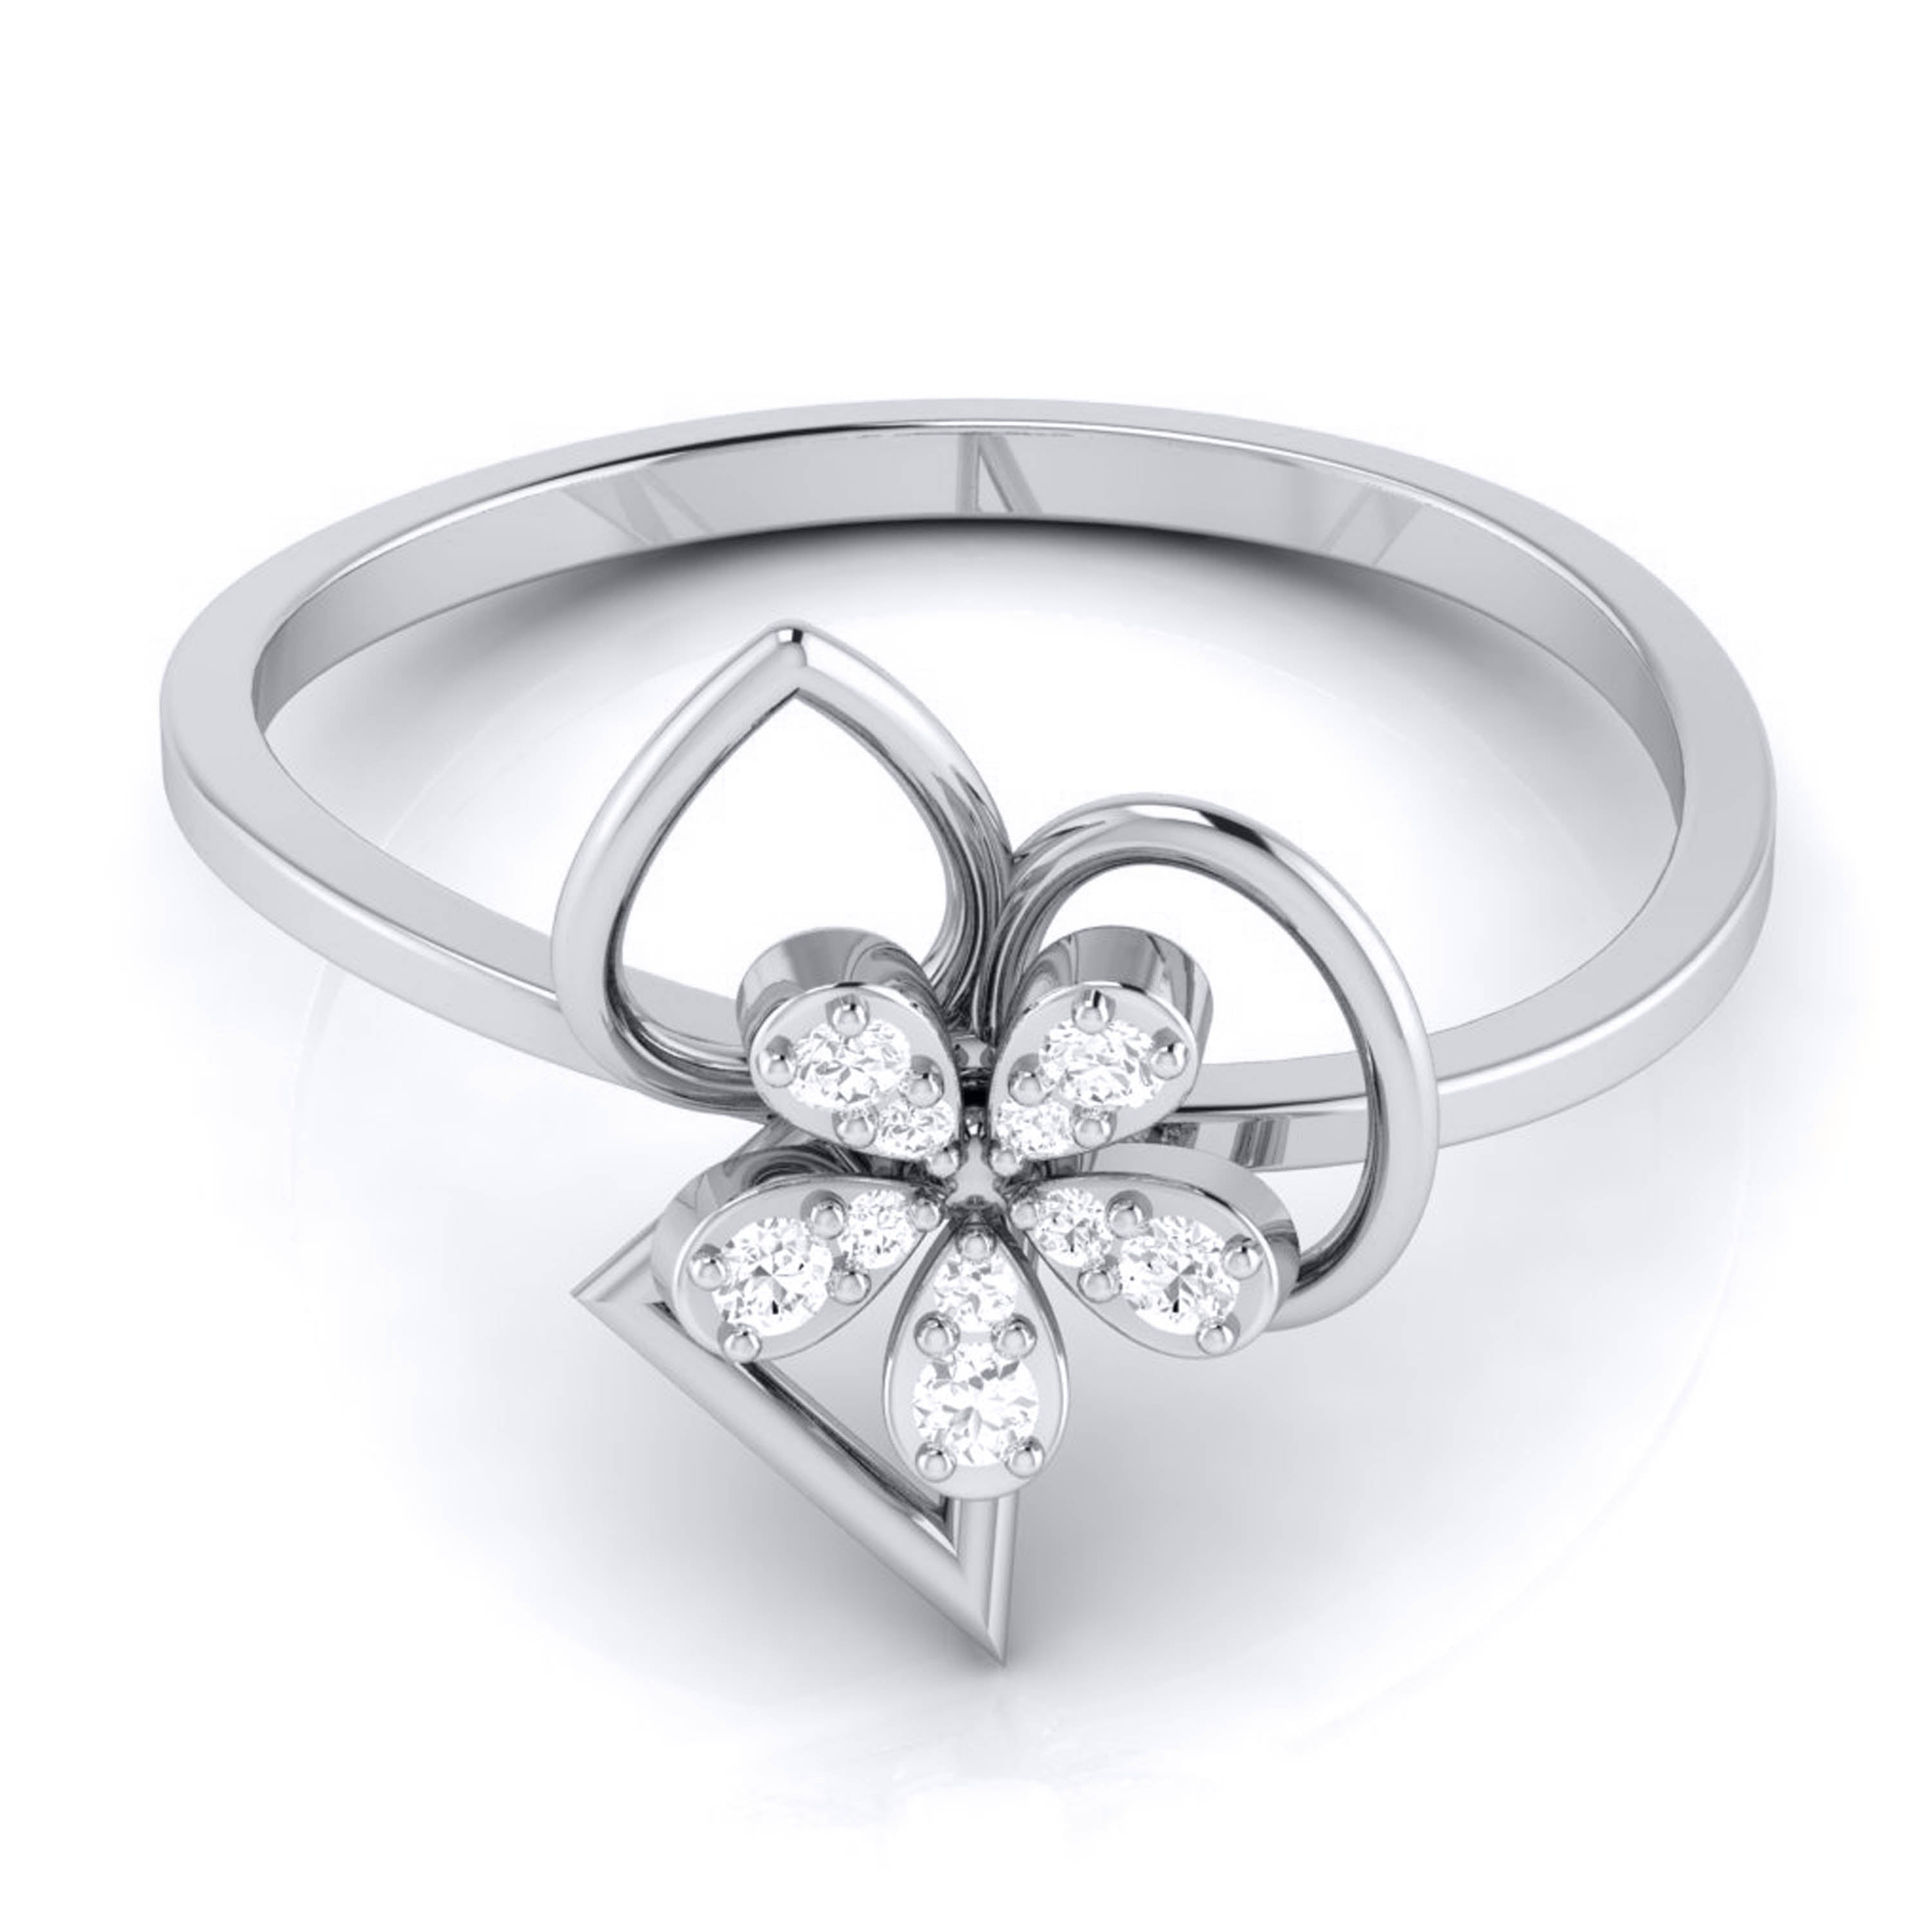 Platinum Diamond Ring for Women JL PT LR 107